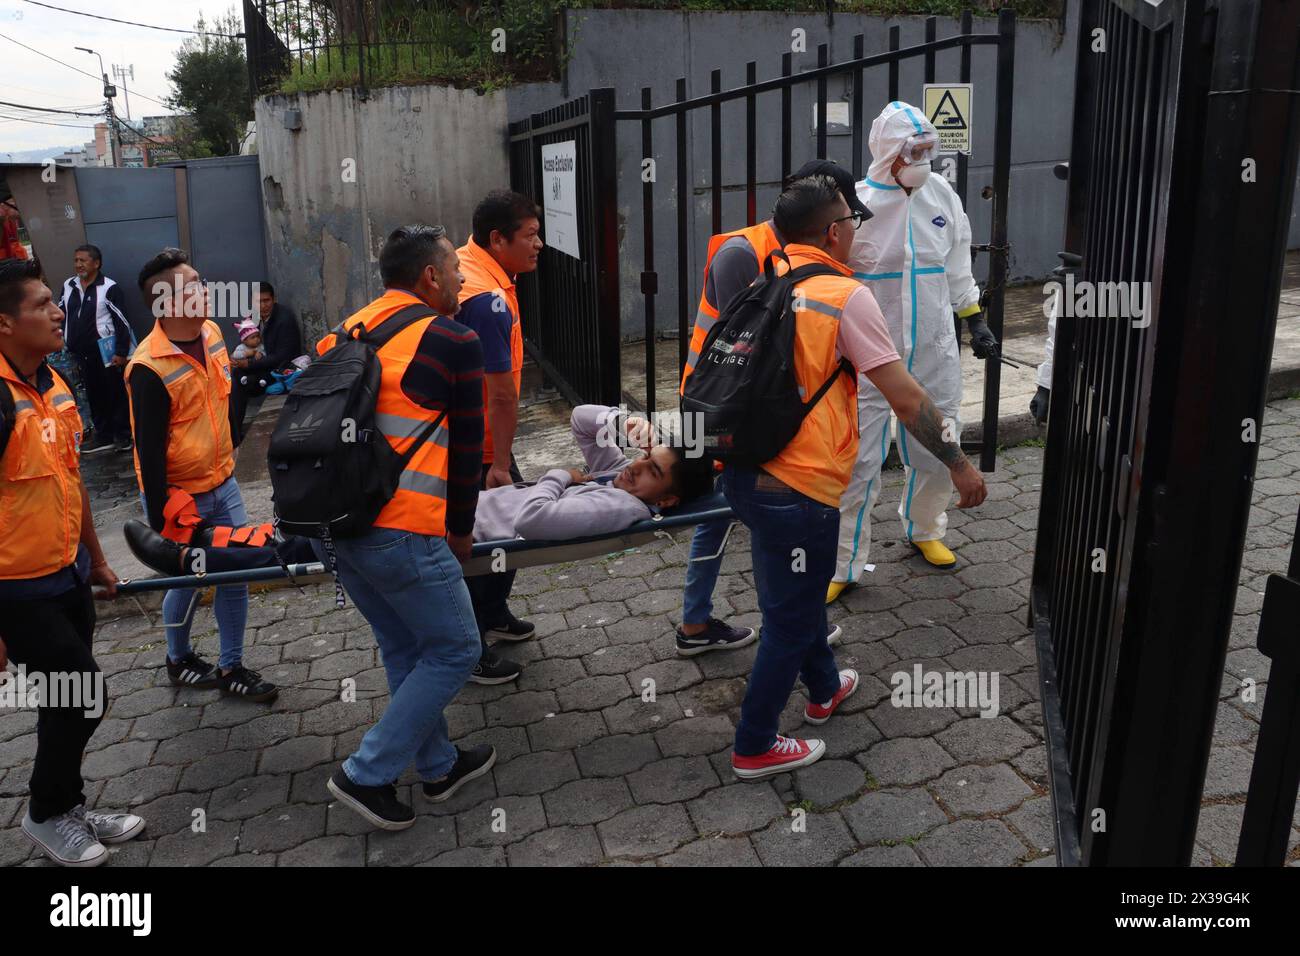 ASAMBLEA-SIMULACRO-ATENTADOS Quito, jueves 25 de abril del 2024 Similacro de atentados terroristas en contra de funcionarios y Asambleistas,en la Asamblea Nacional, Edificio del Palacio Legislativo y sus alrededores. Fotos:Rolando Enriquez/API Quito Pichincha Ecuador POL-ASAMBLEA-SIMULACRO-ATENTADOS-be55ab7efcee2e88fd6f023442a11883 *** ASAMBLEA SIMULACRO SIMULACRO ATENTADOS Quito, Thursday, April 25, 2024 Simulation of terrorist attacks against officials and Assembly Members, in the National Assembly, Legislative Palace Building and its surroundings Photos Rolando Enriquez API Quito Pichincha Stock Photo